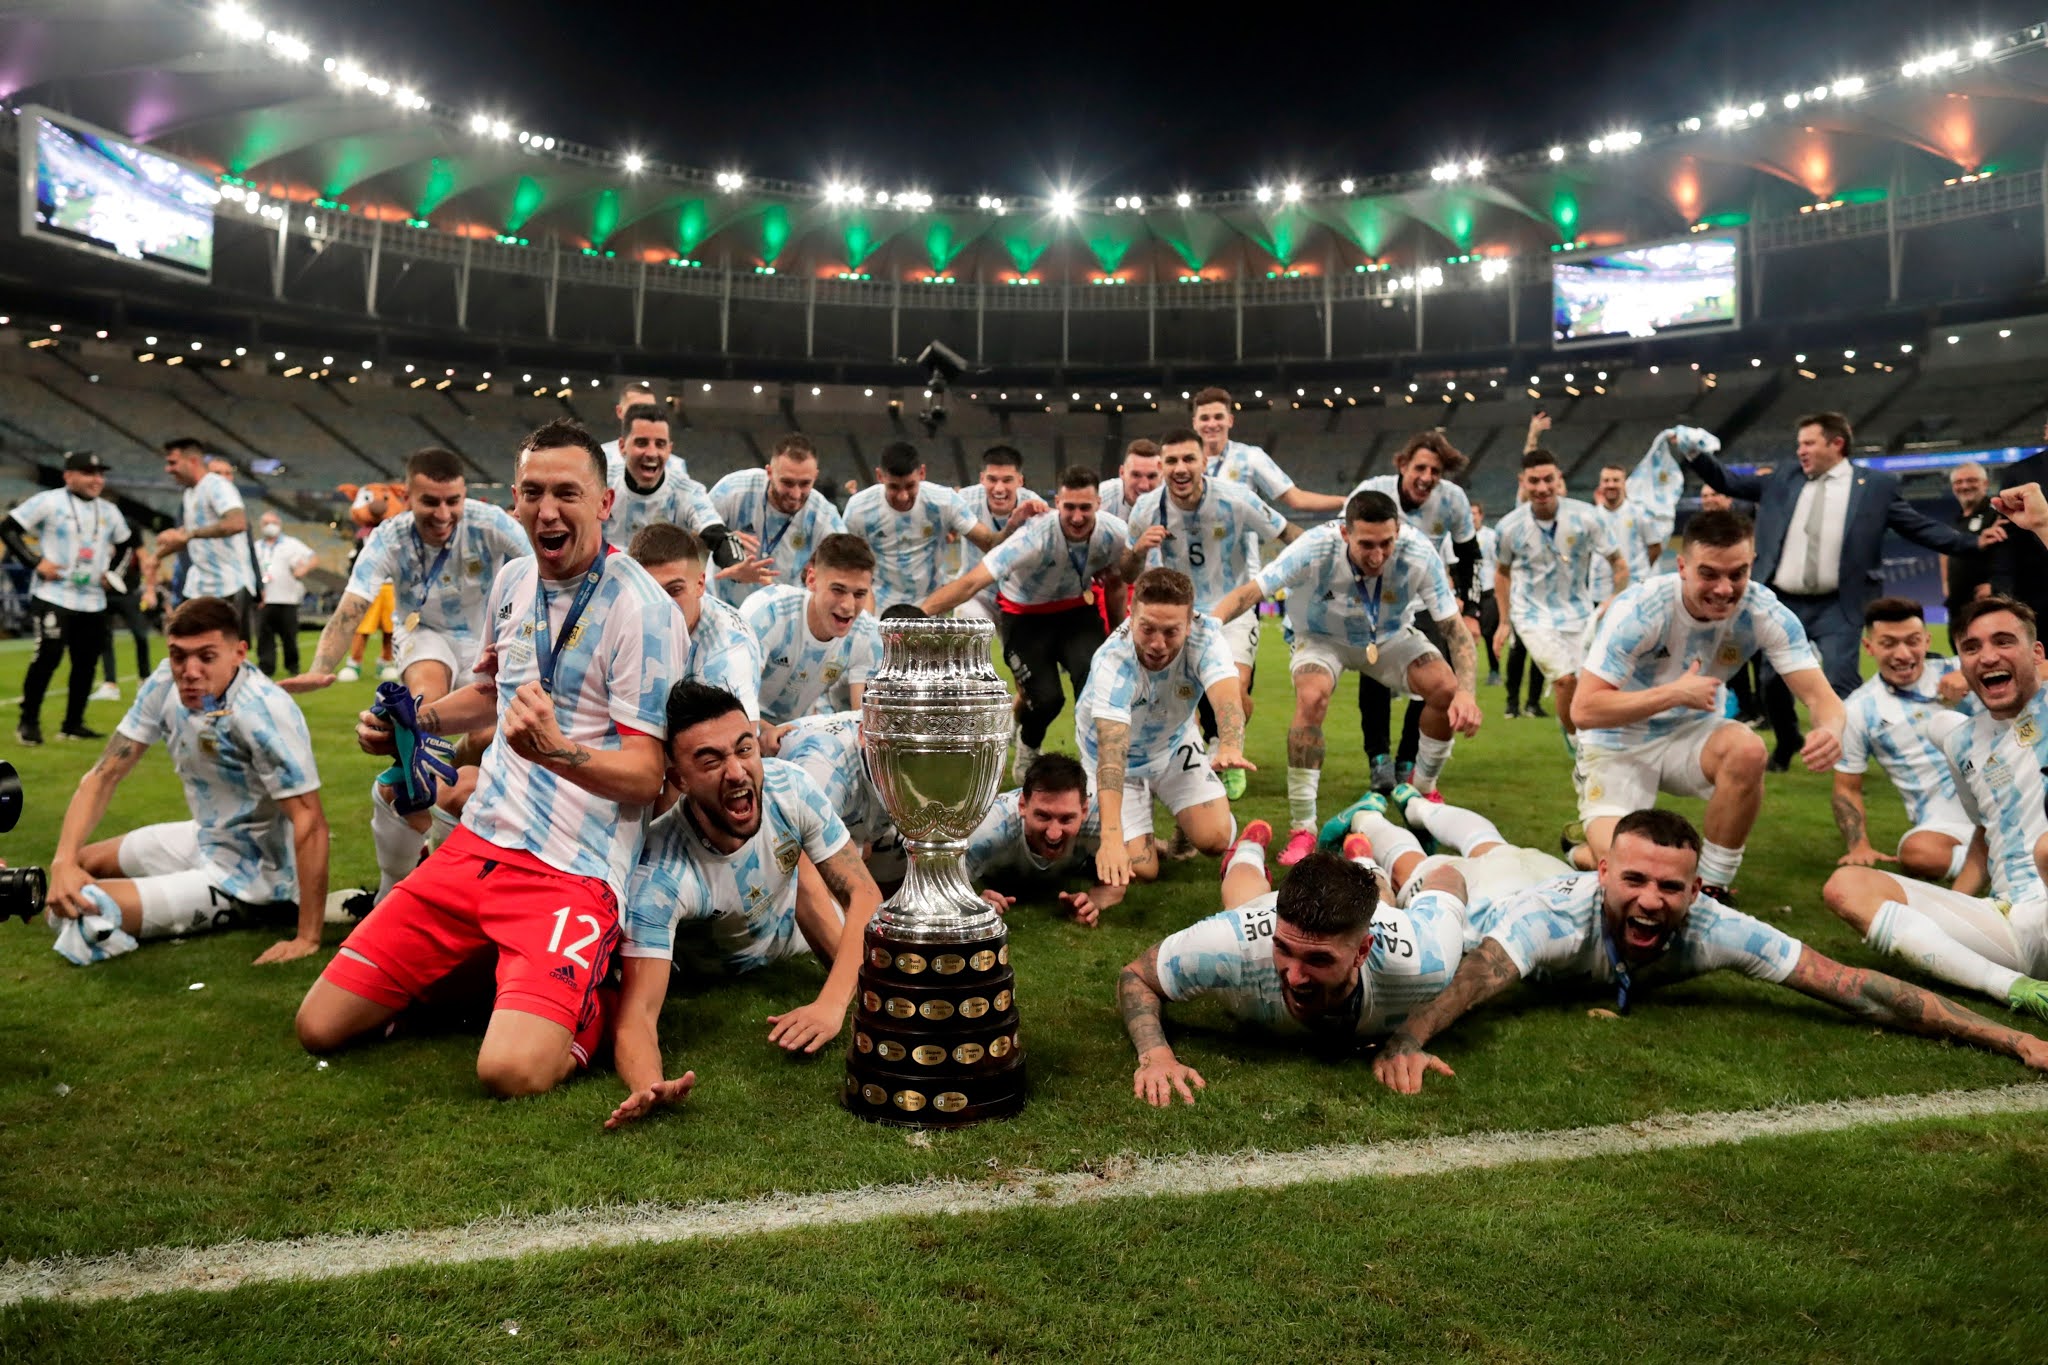 GALERIA DE FOTOS: Las mejores imágenes de Argentina campeón de la Copa América 2021 en el Maracaná